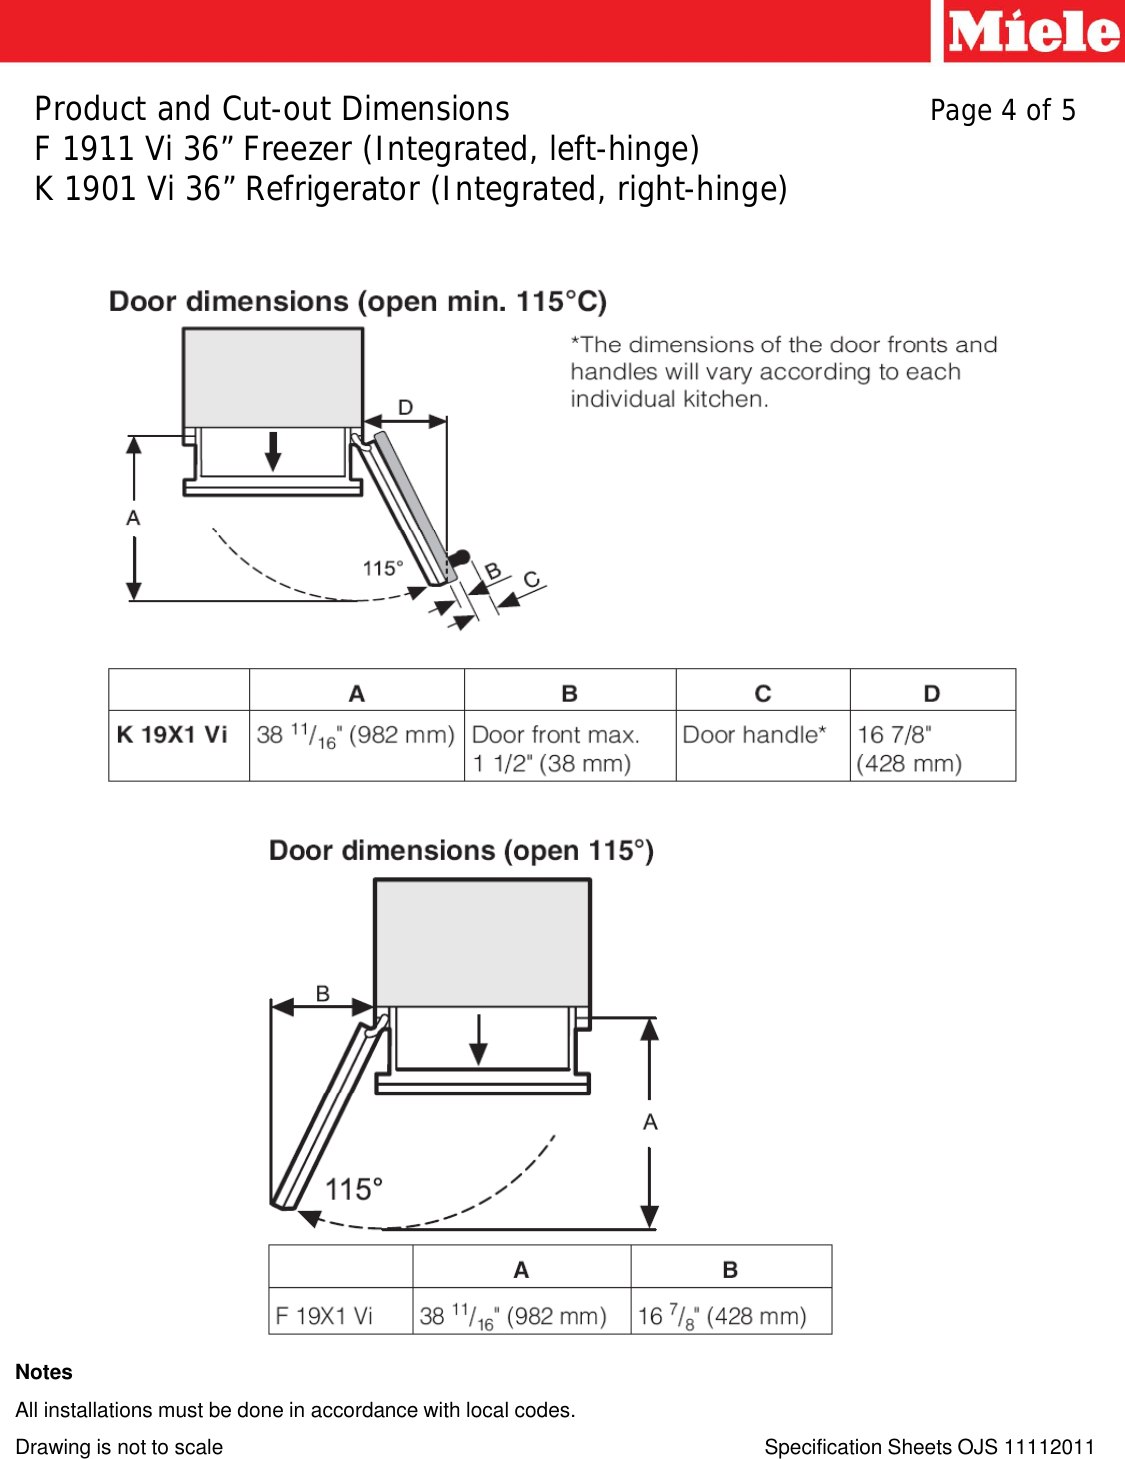 Page 4 of 5 - Miele Miele-Refrigerator-F-1911-Vi-36-Users-Manual- Microsoft  - F1911Vi_K1901Vi [Compatibility Mode] Miele-refrigerator-f-1911-vi-36-users-manual